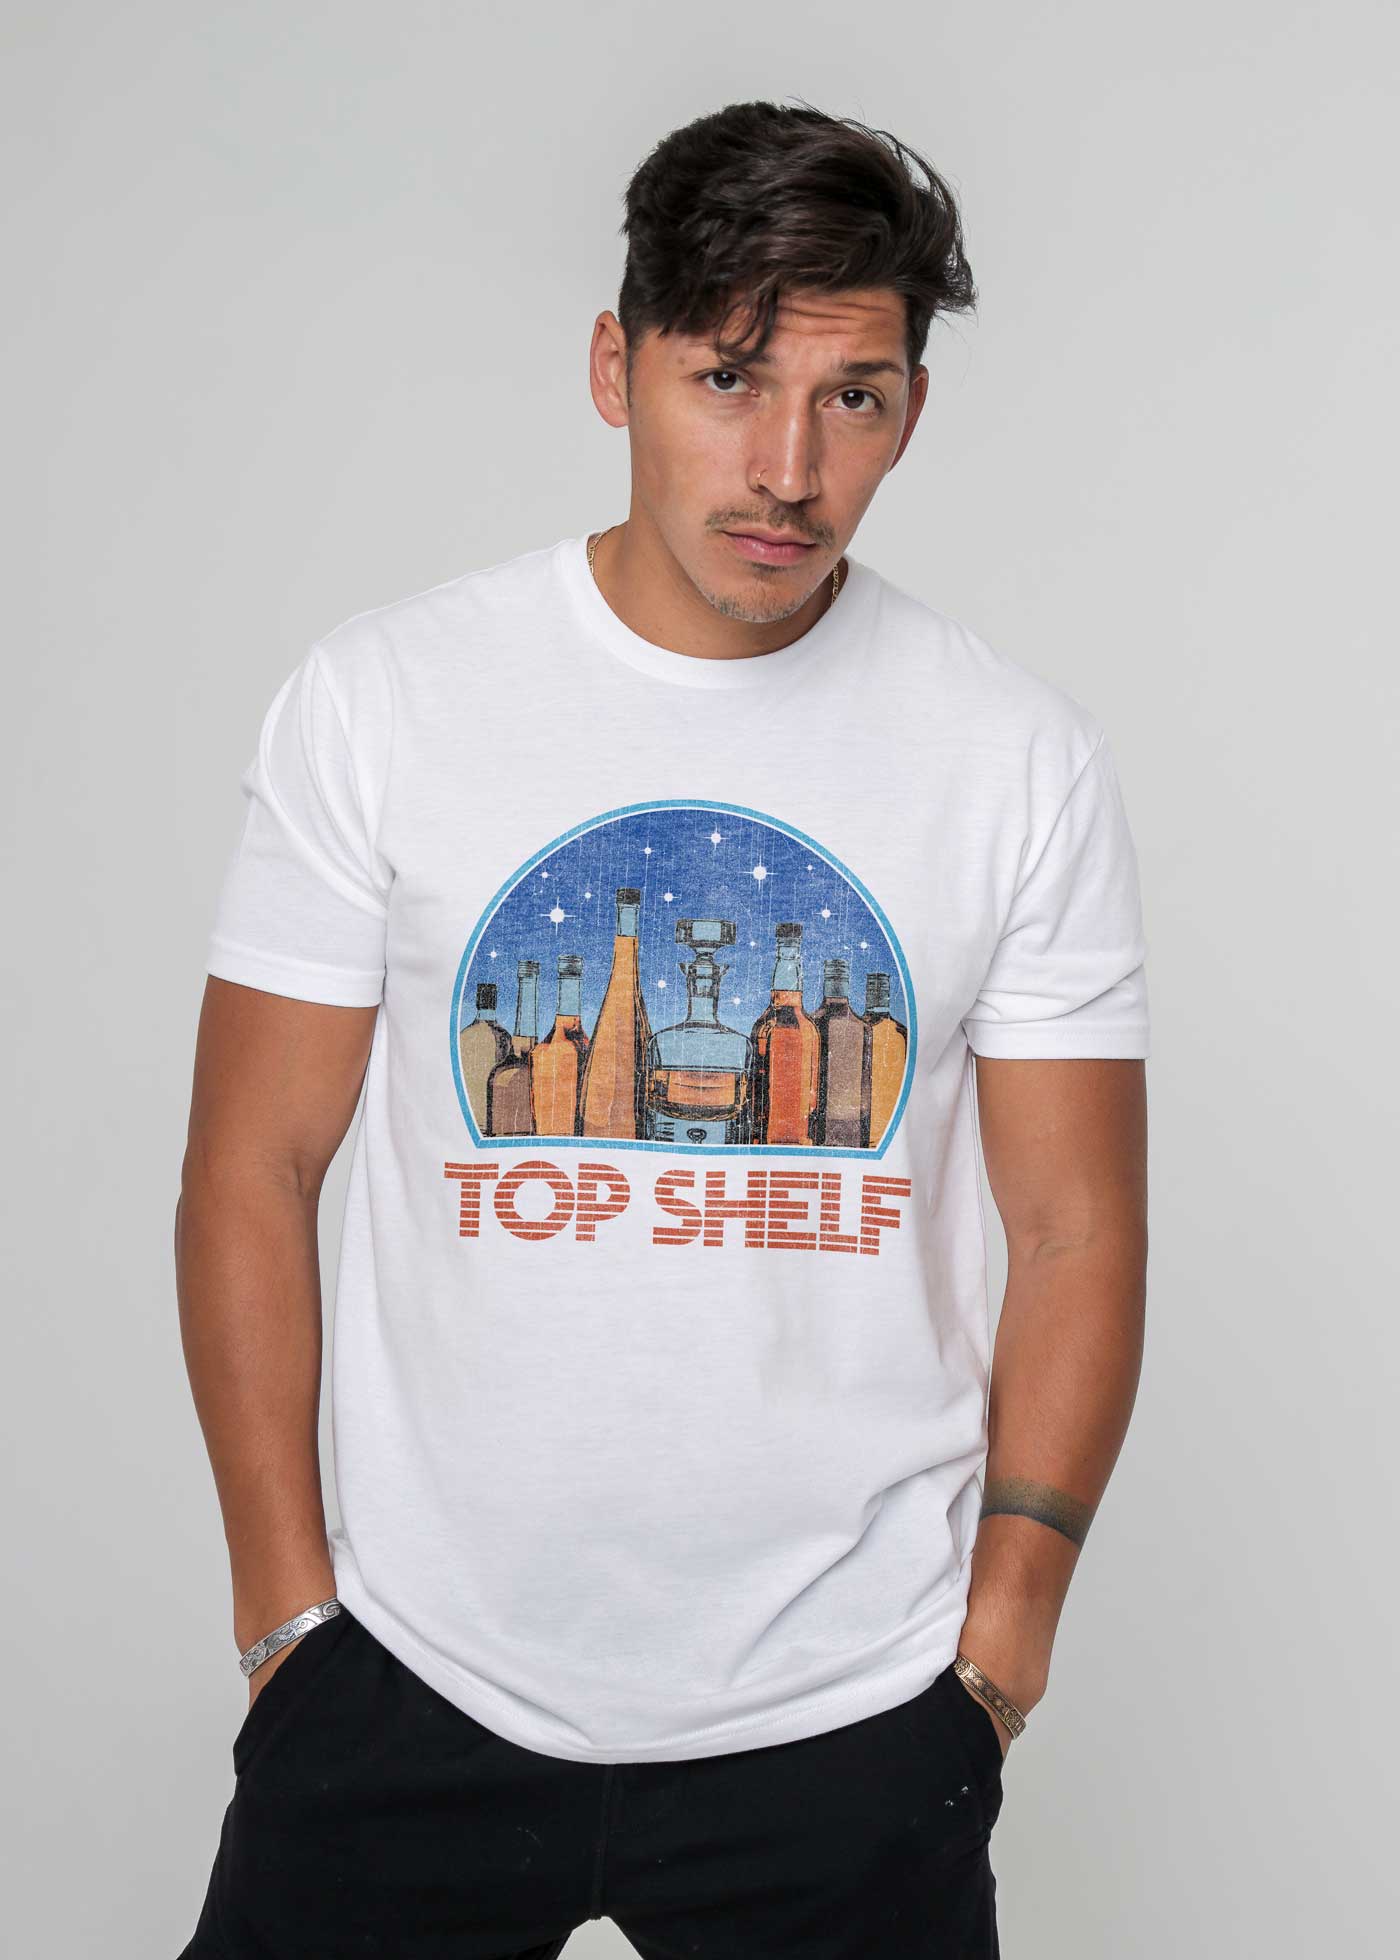 Top Shelf Space Men's White Classic T-Shirt — Kid Dangerous